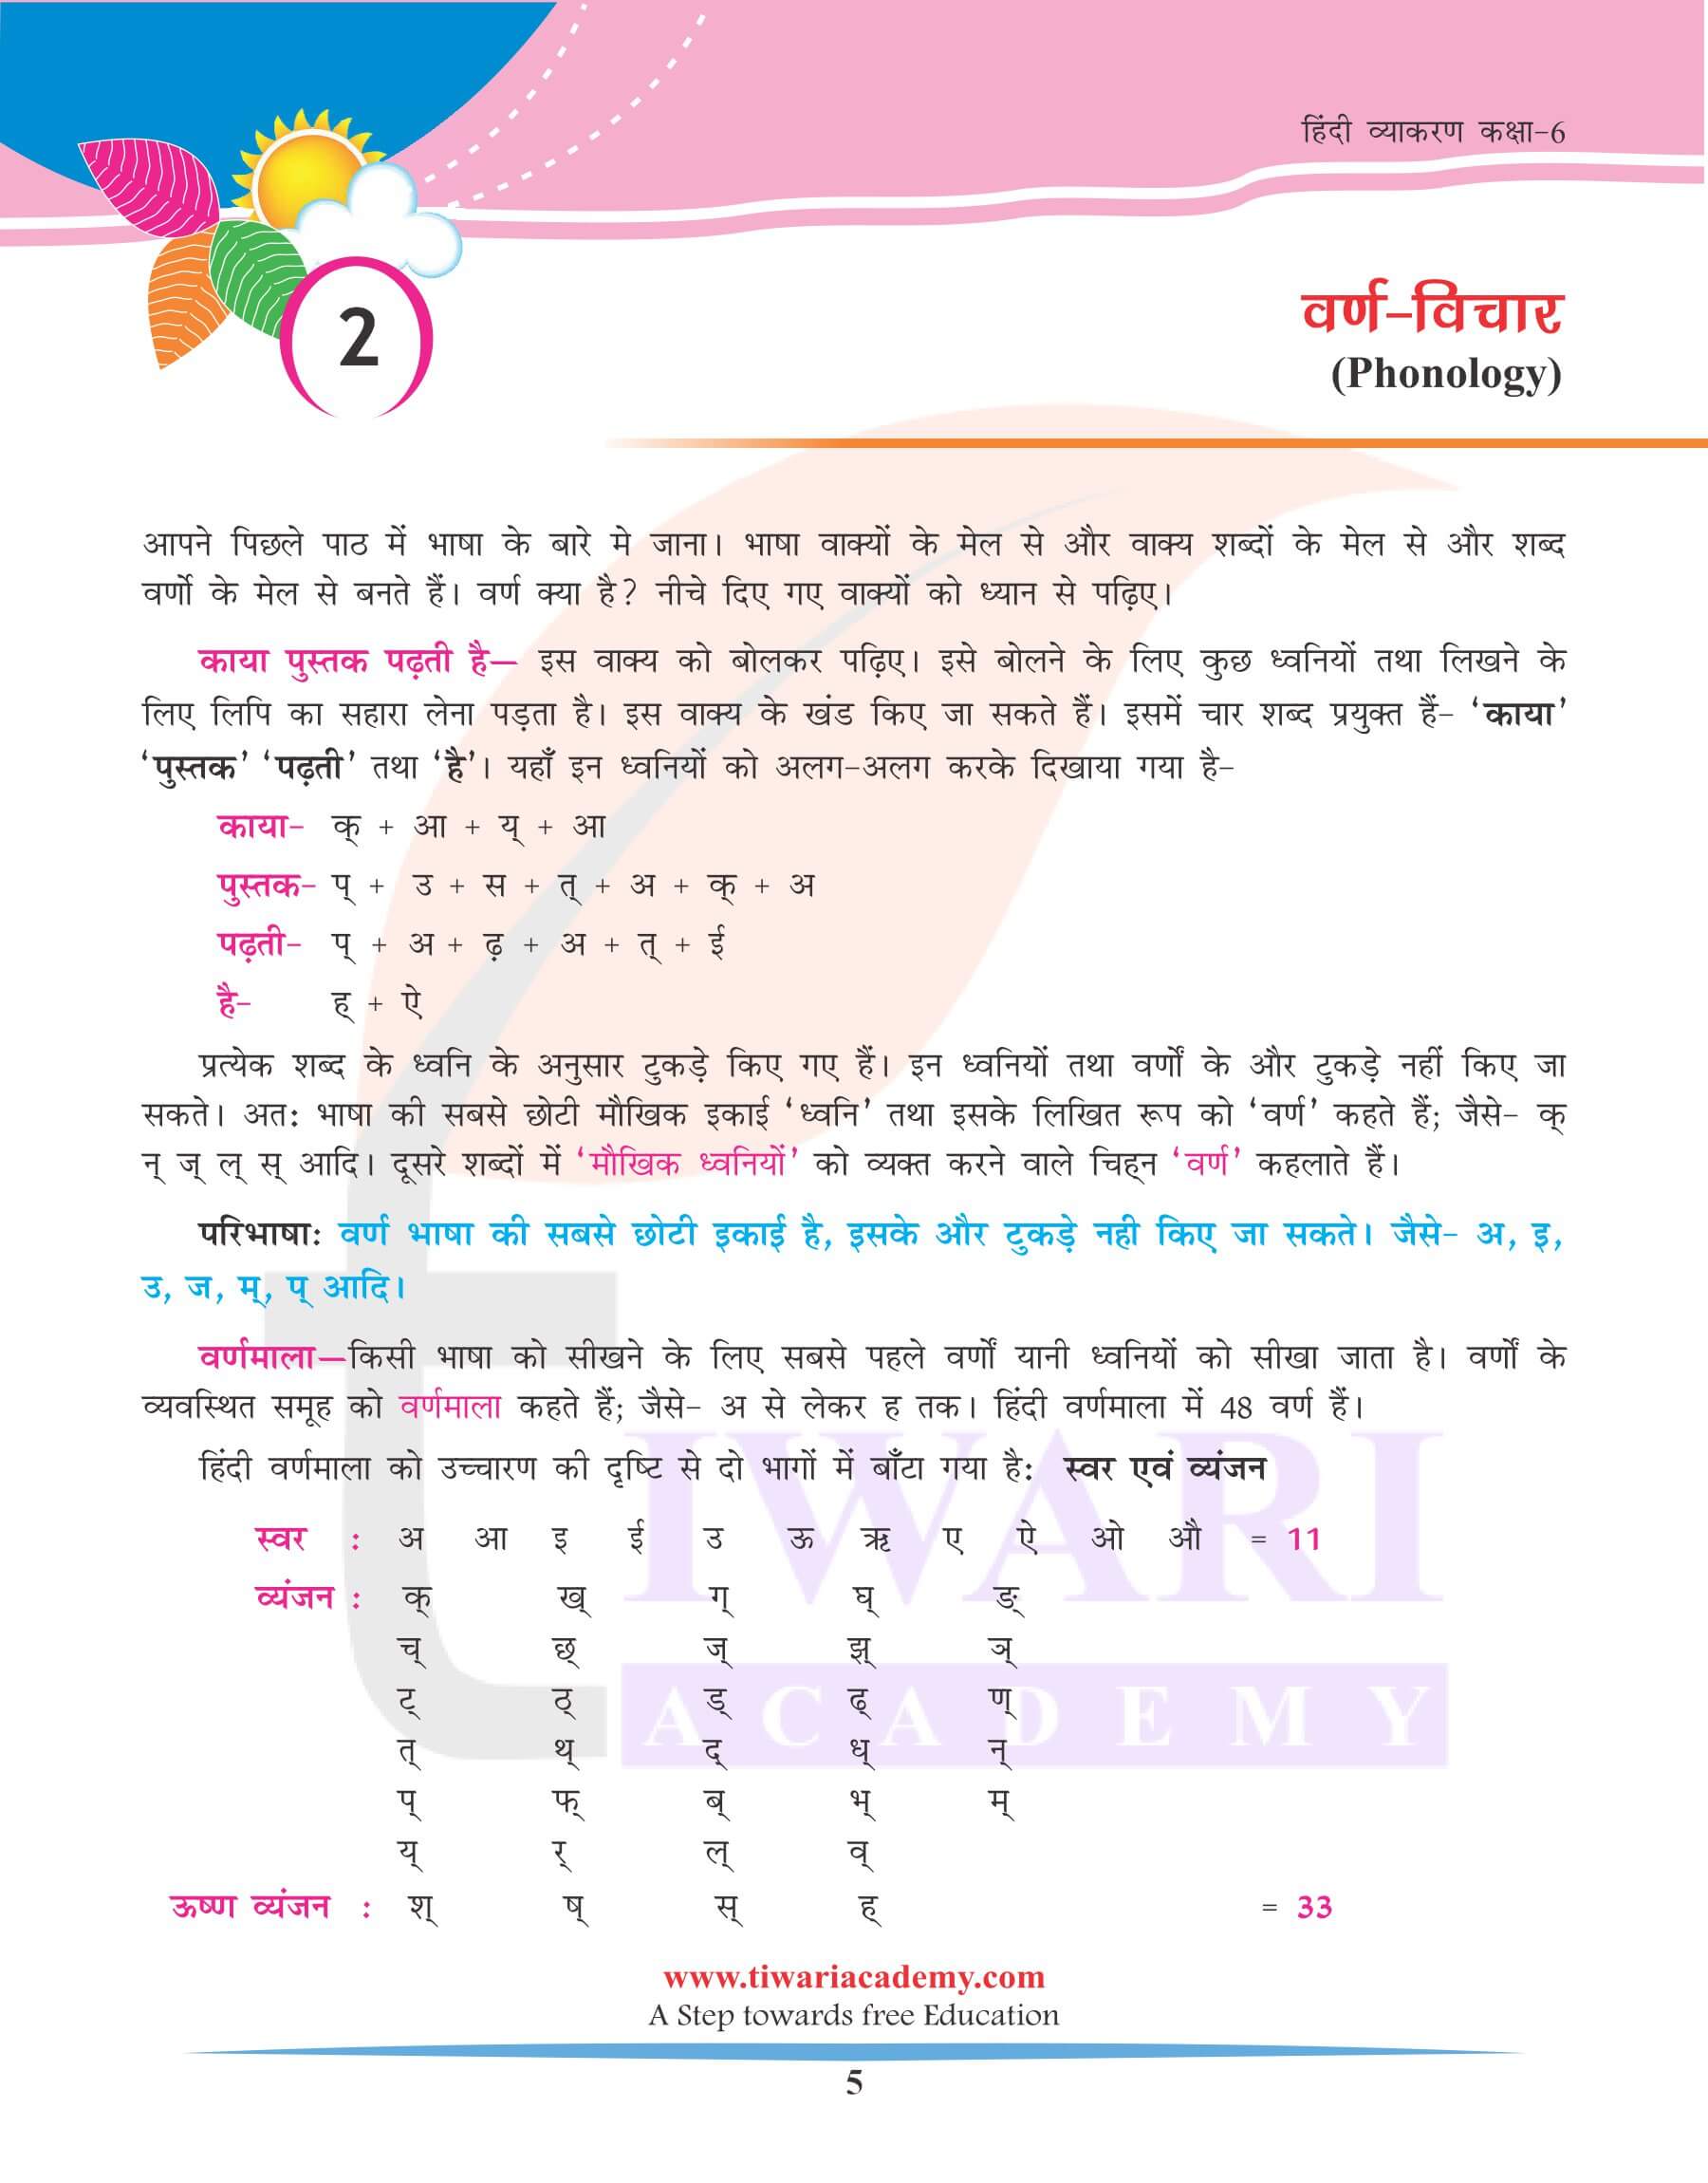 कक्षा 6 हिंदी व्याकरण अध्याय 2 वर्ण विचार के उपयोग